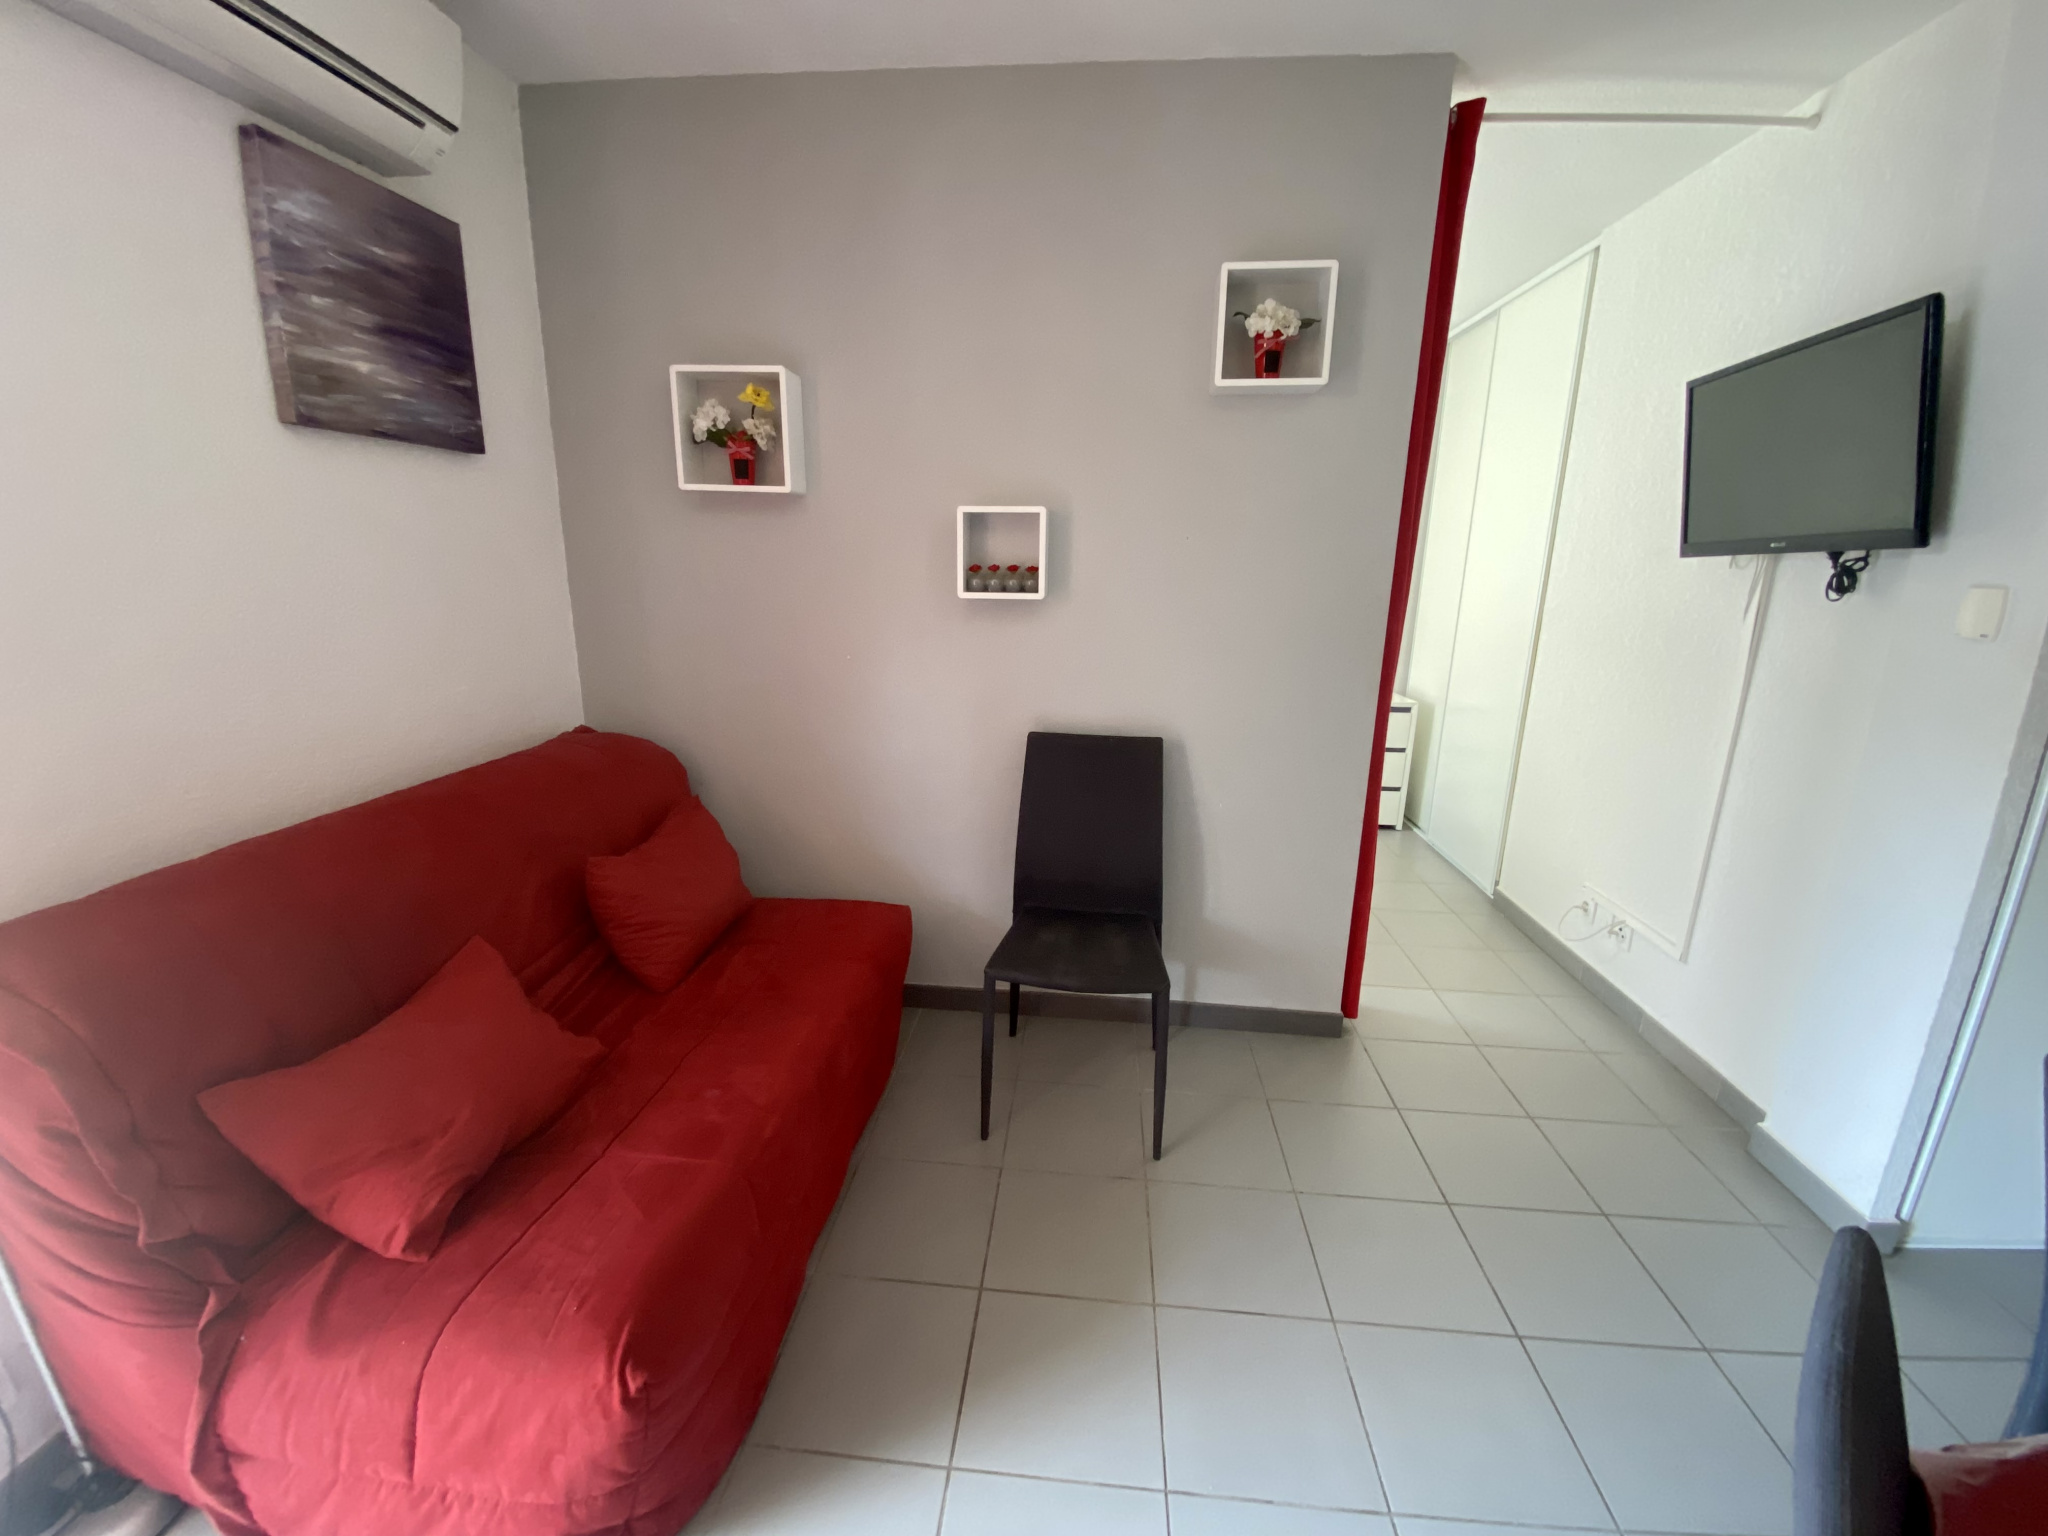 À vendre appartement de 39.22m2 à argelès-sur-mer (66700) - Photo 4'